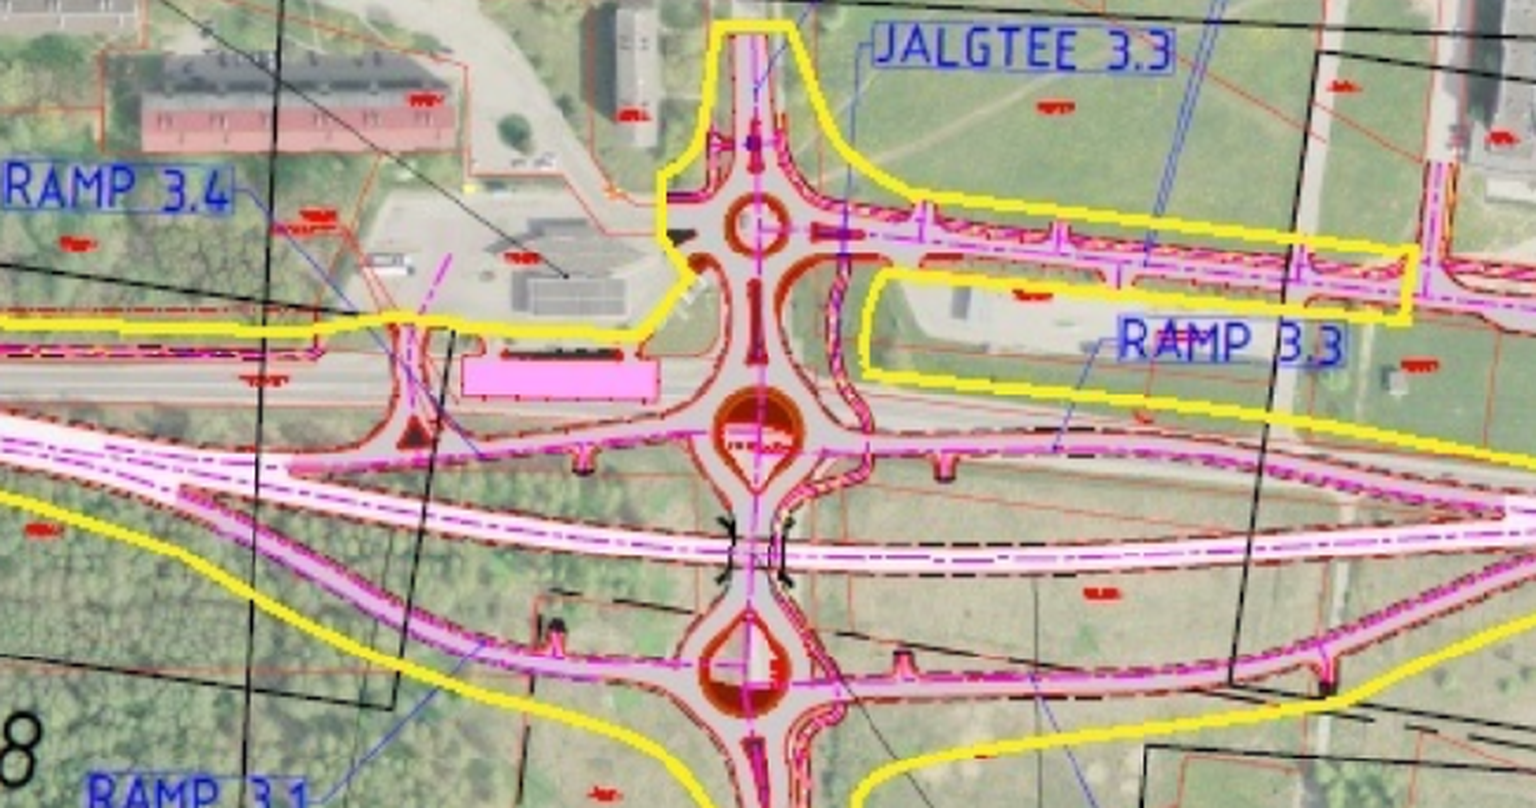 Схема строительства новой развязки в Силламяэ, наложенная на спутниковое фото. В верхней левой части фото видны существующие автобусный вокзал и заправочная станция.